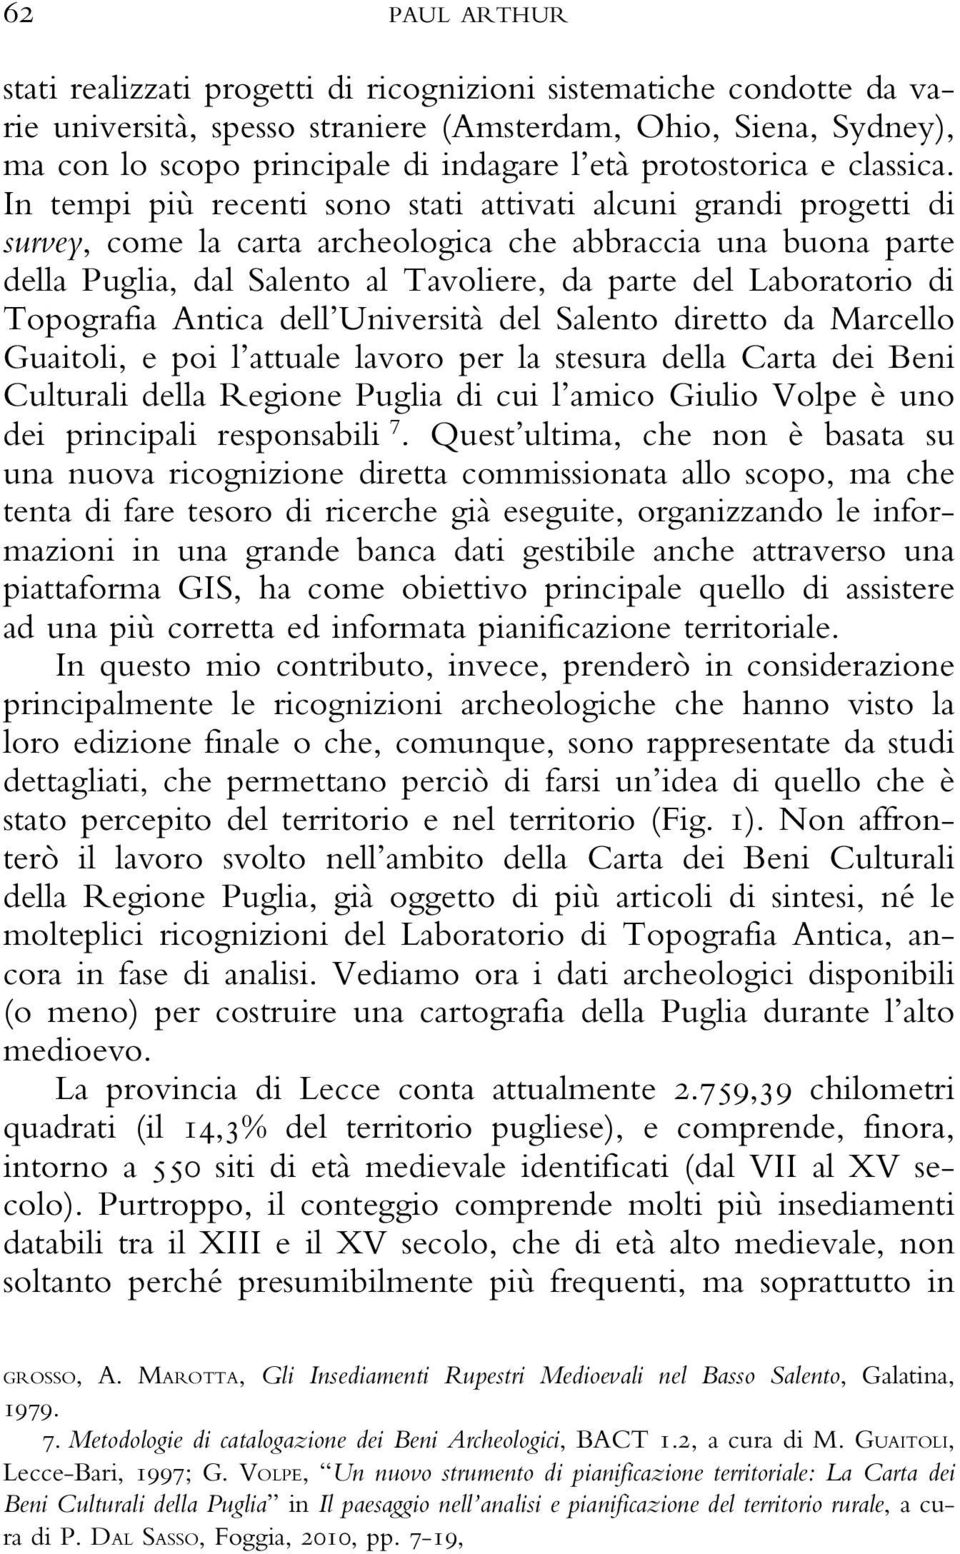 In tempi più recenti sono stati attivati alcuni grandi progetti di survey, come la carta archeologica che abbraccia una buona parte della Puglia, dal Salento al Tavoliere, da parte del Laboratorio di